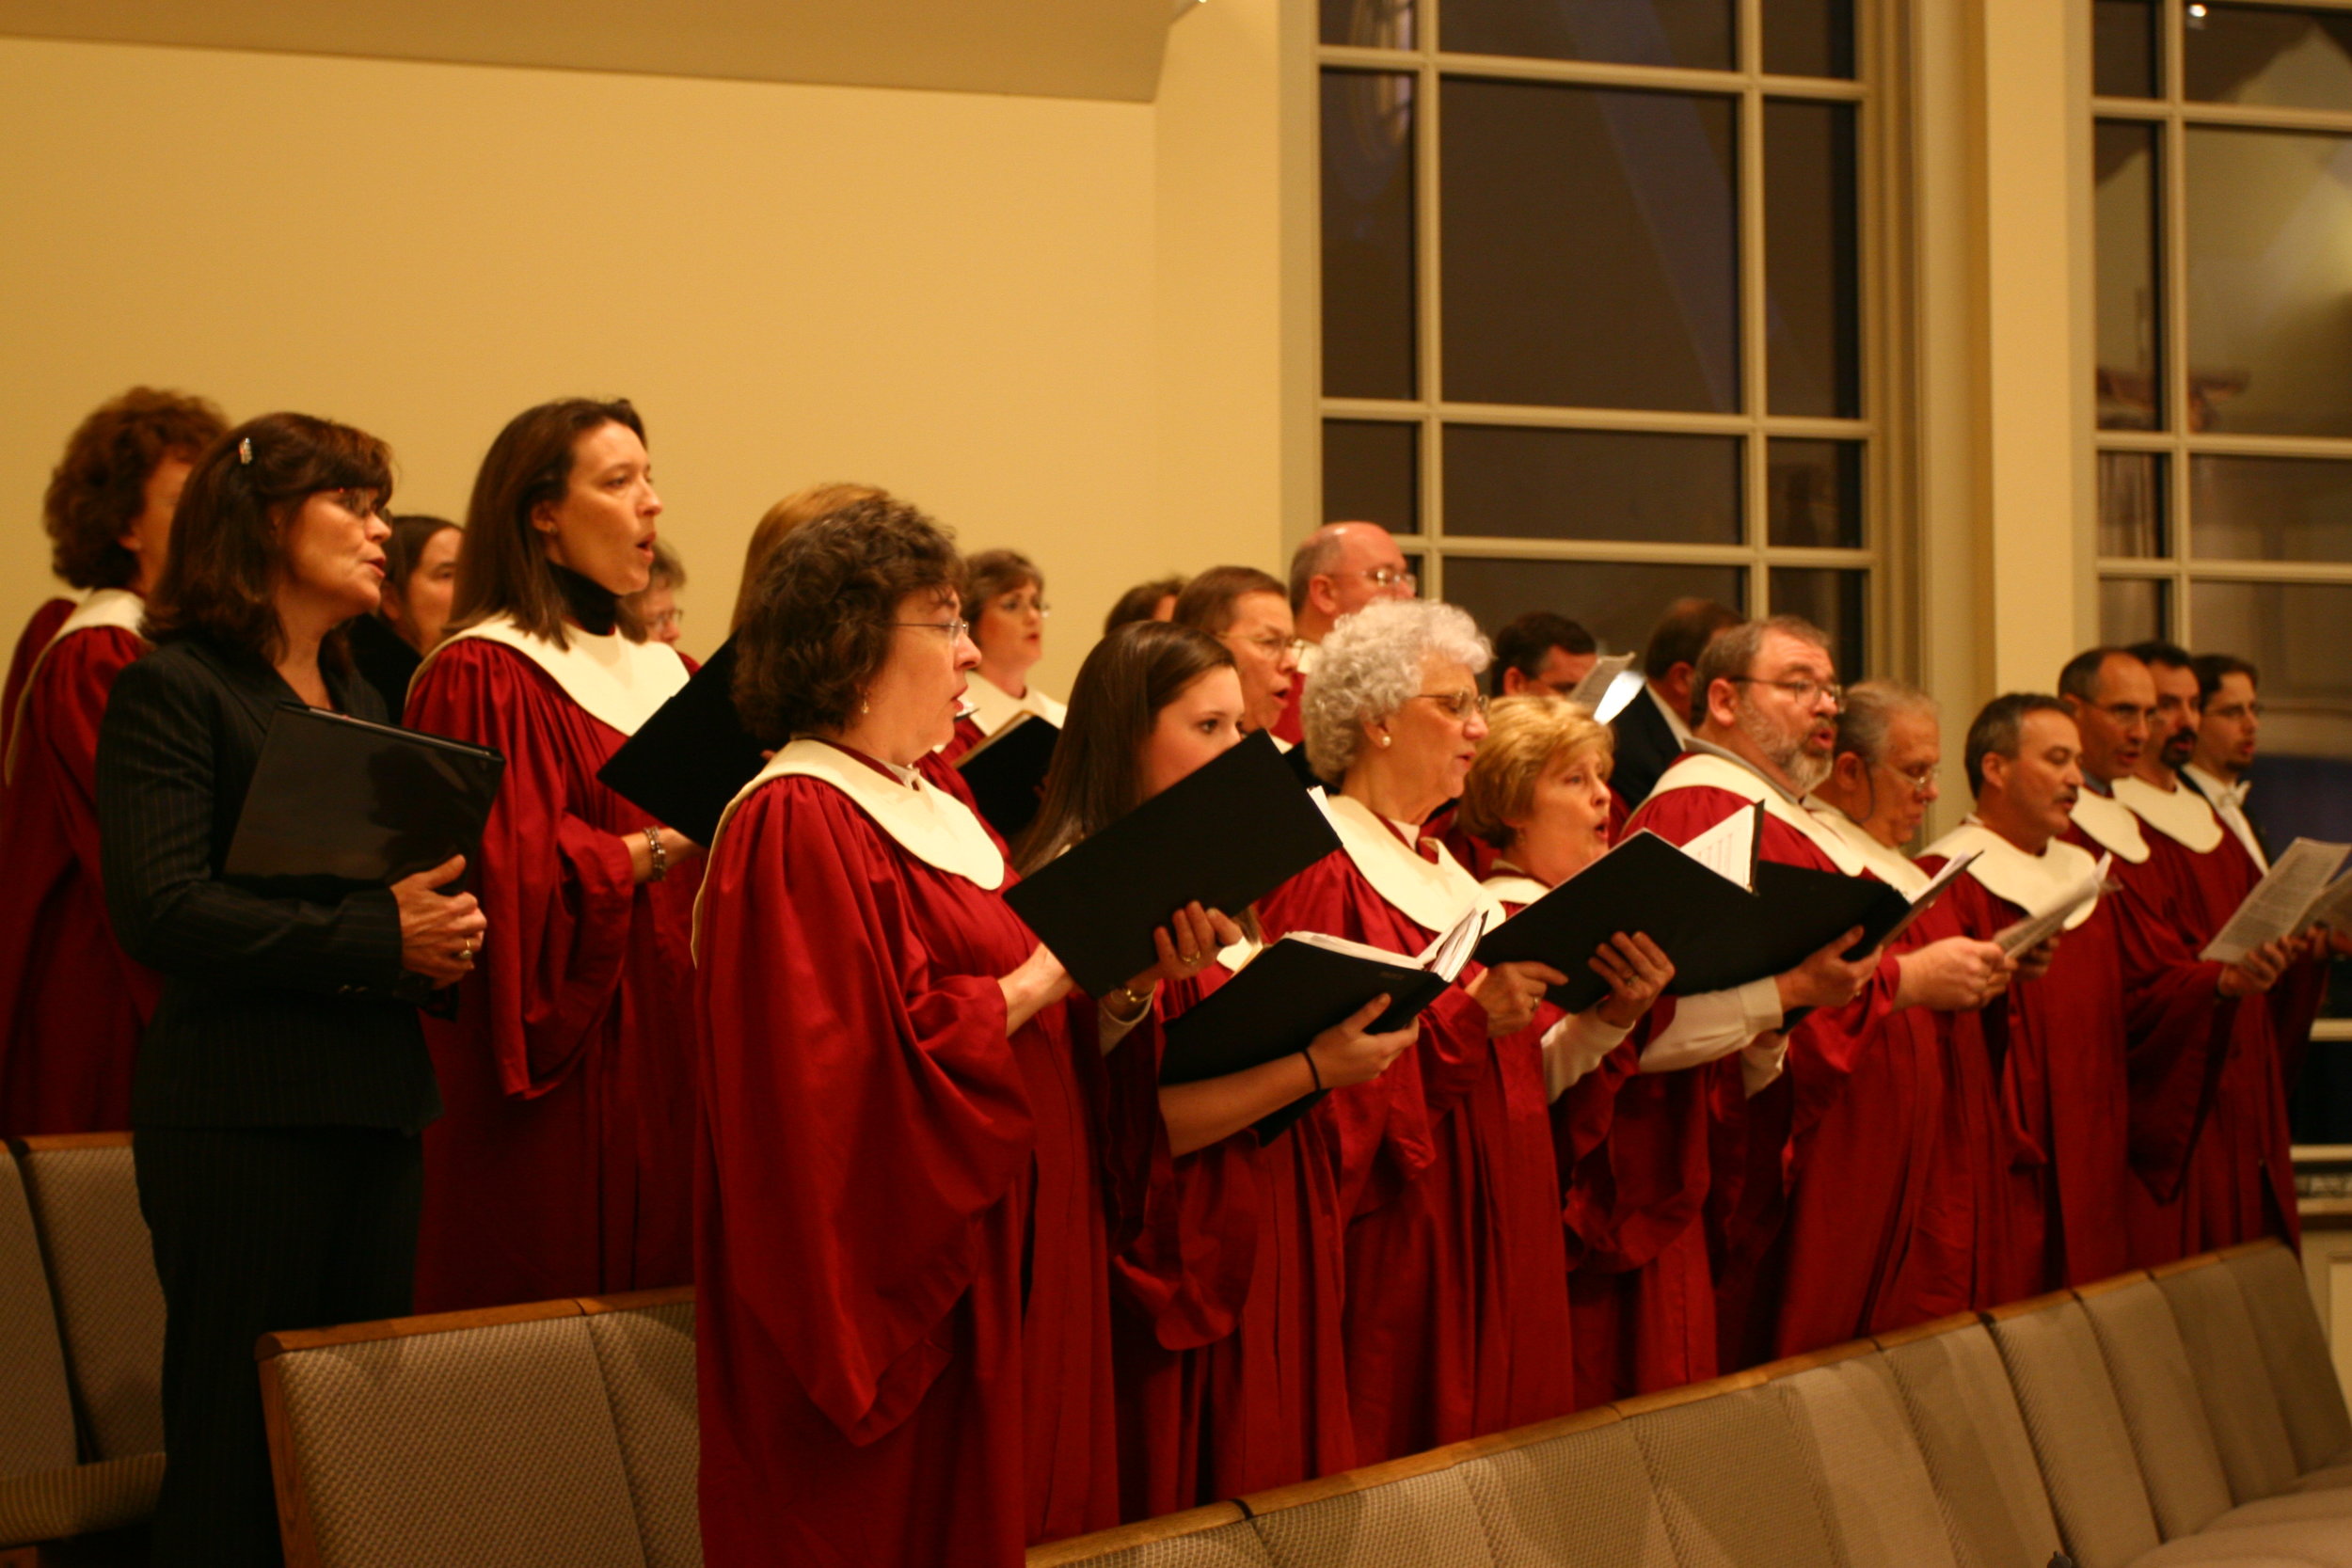 St. Louis Choir